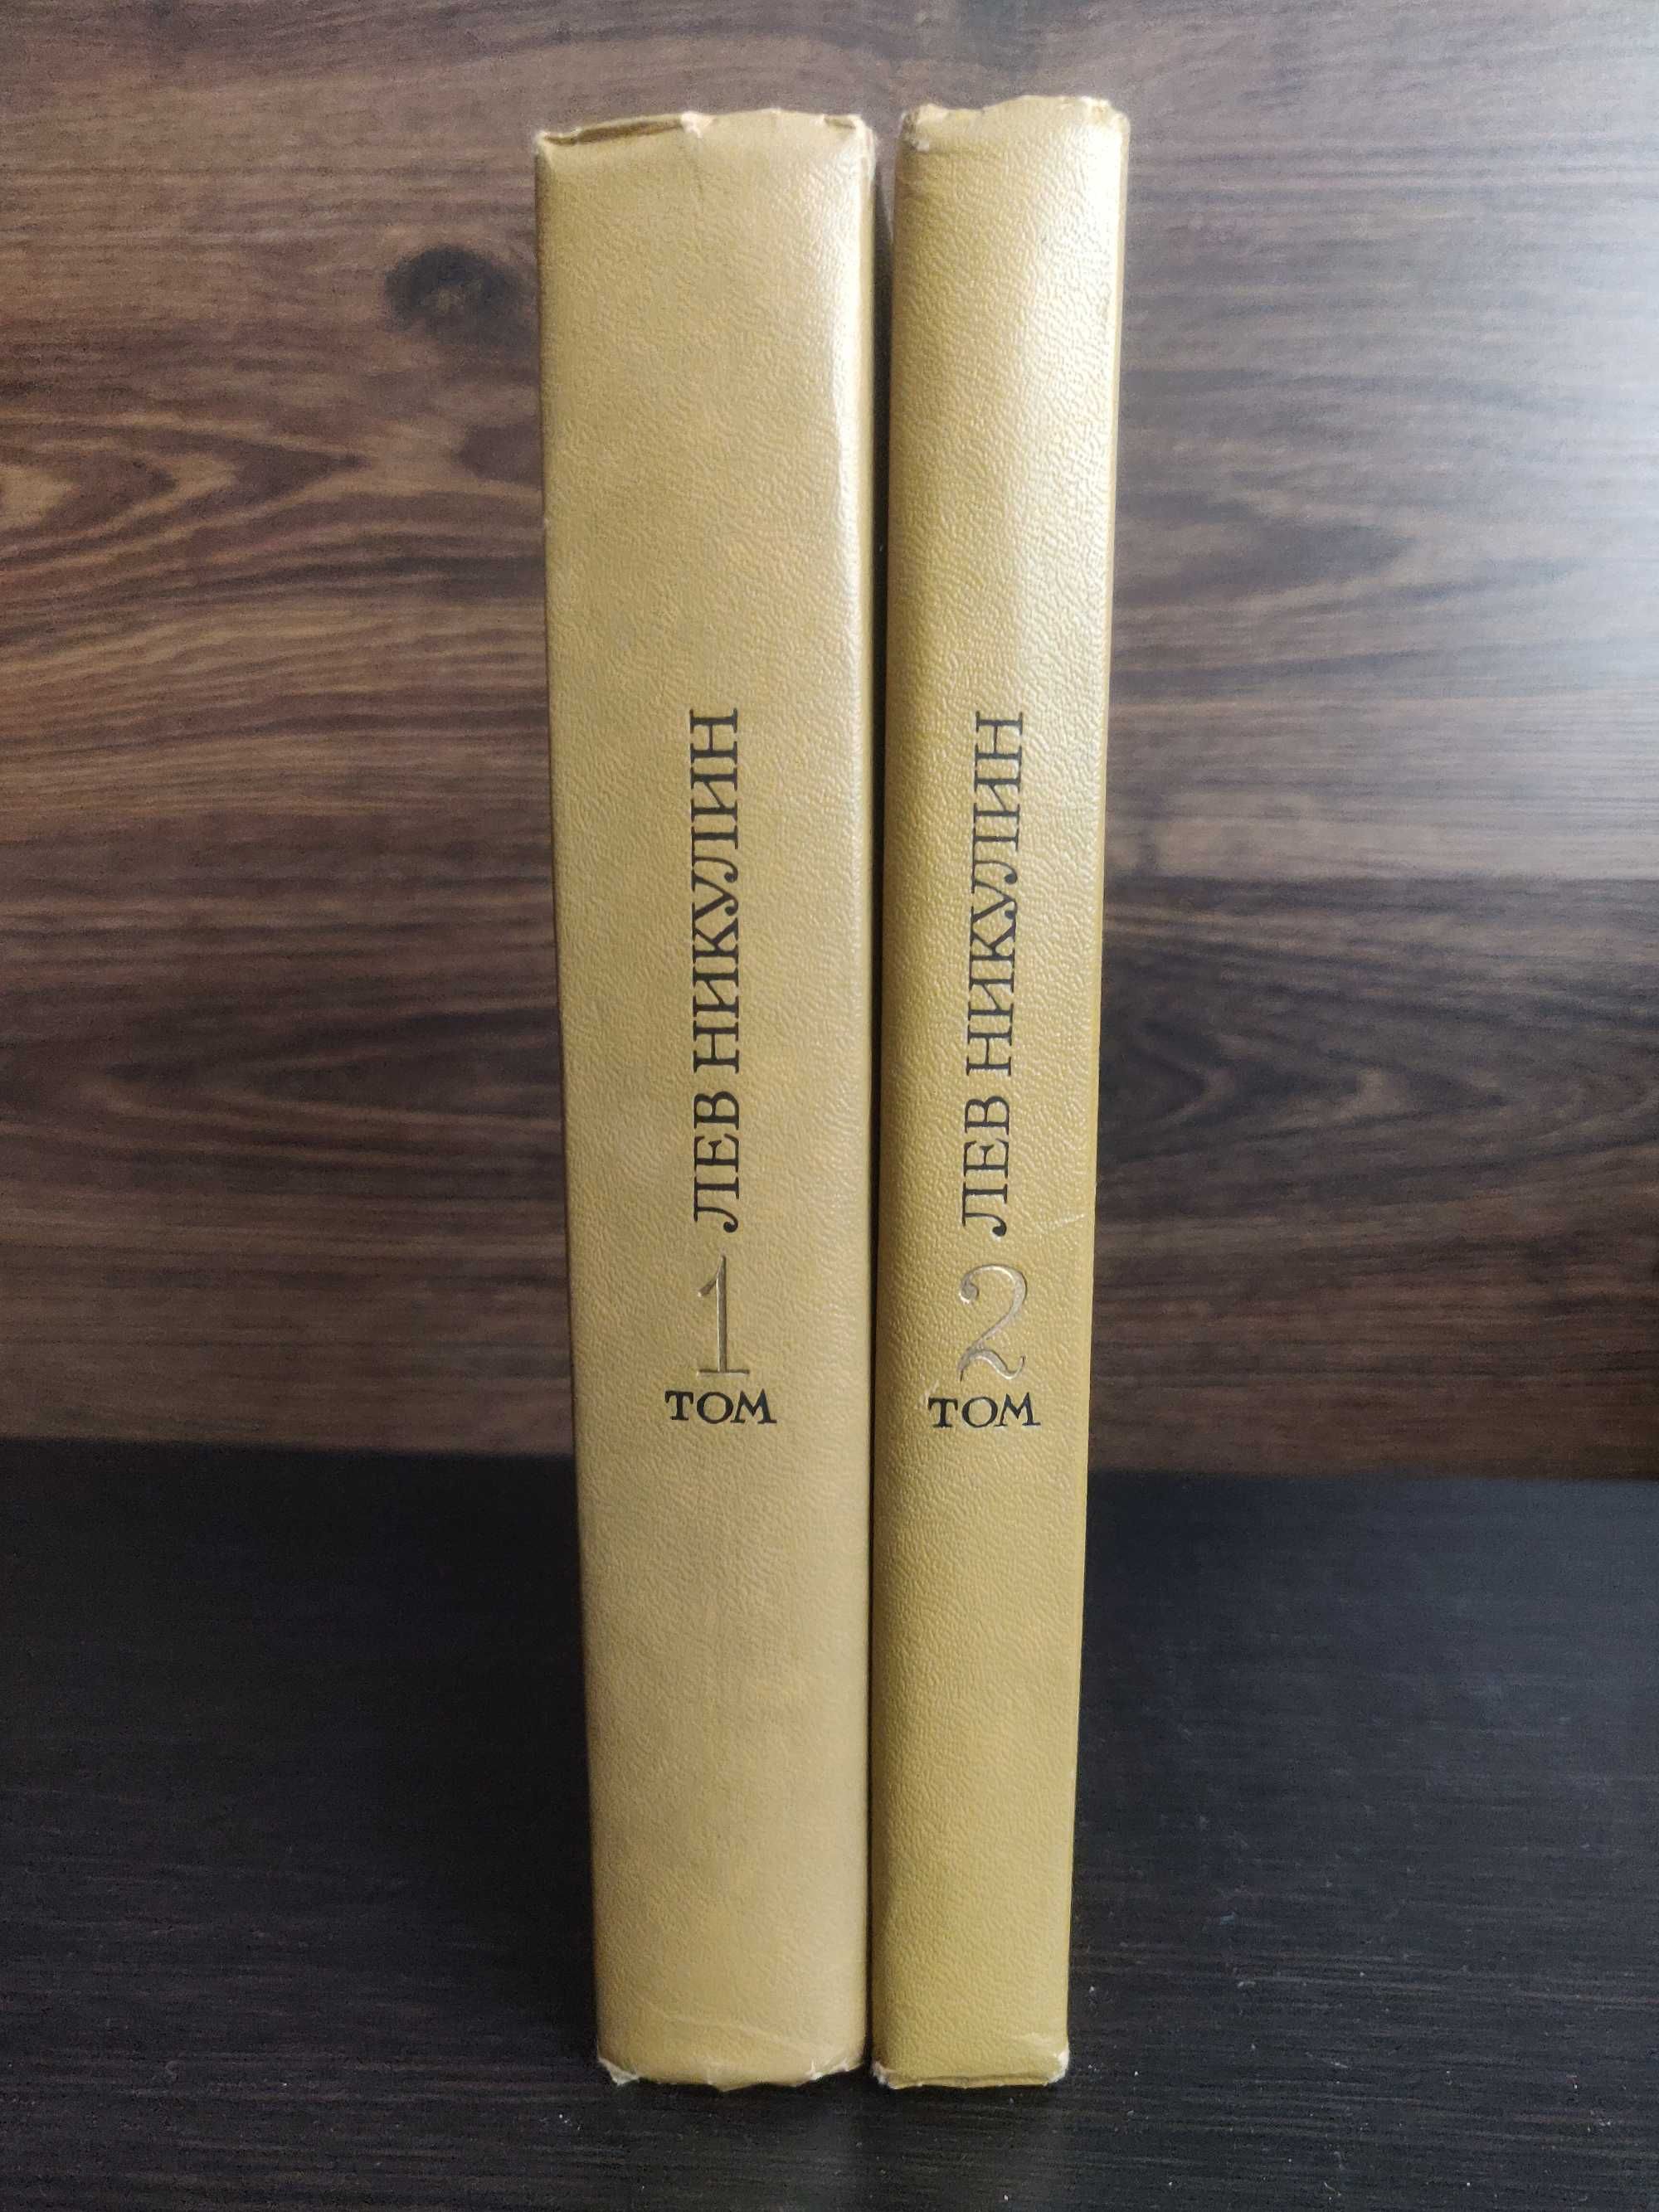 Лев Никулин.Избранные произведения в 2 томах 1979 г. идеальное сост-е